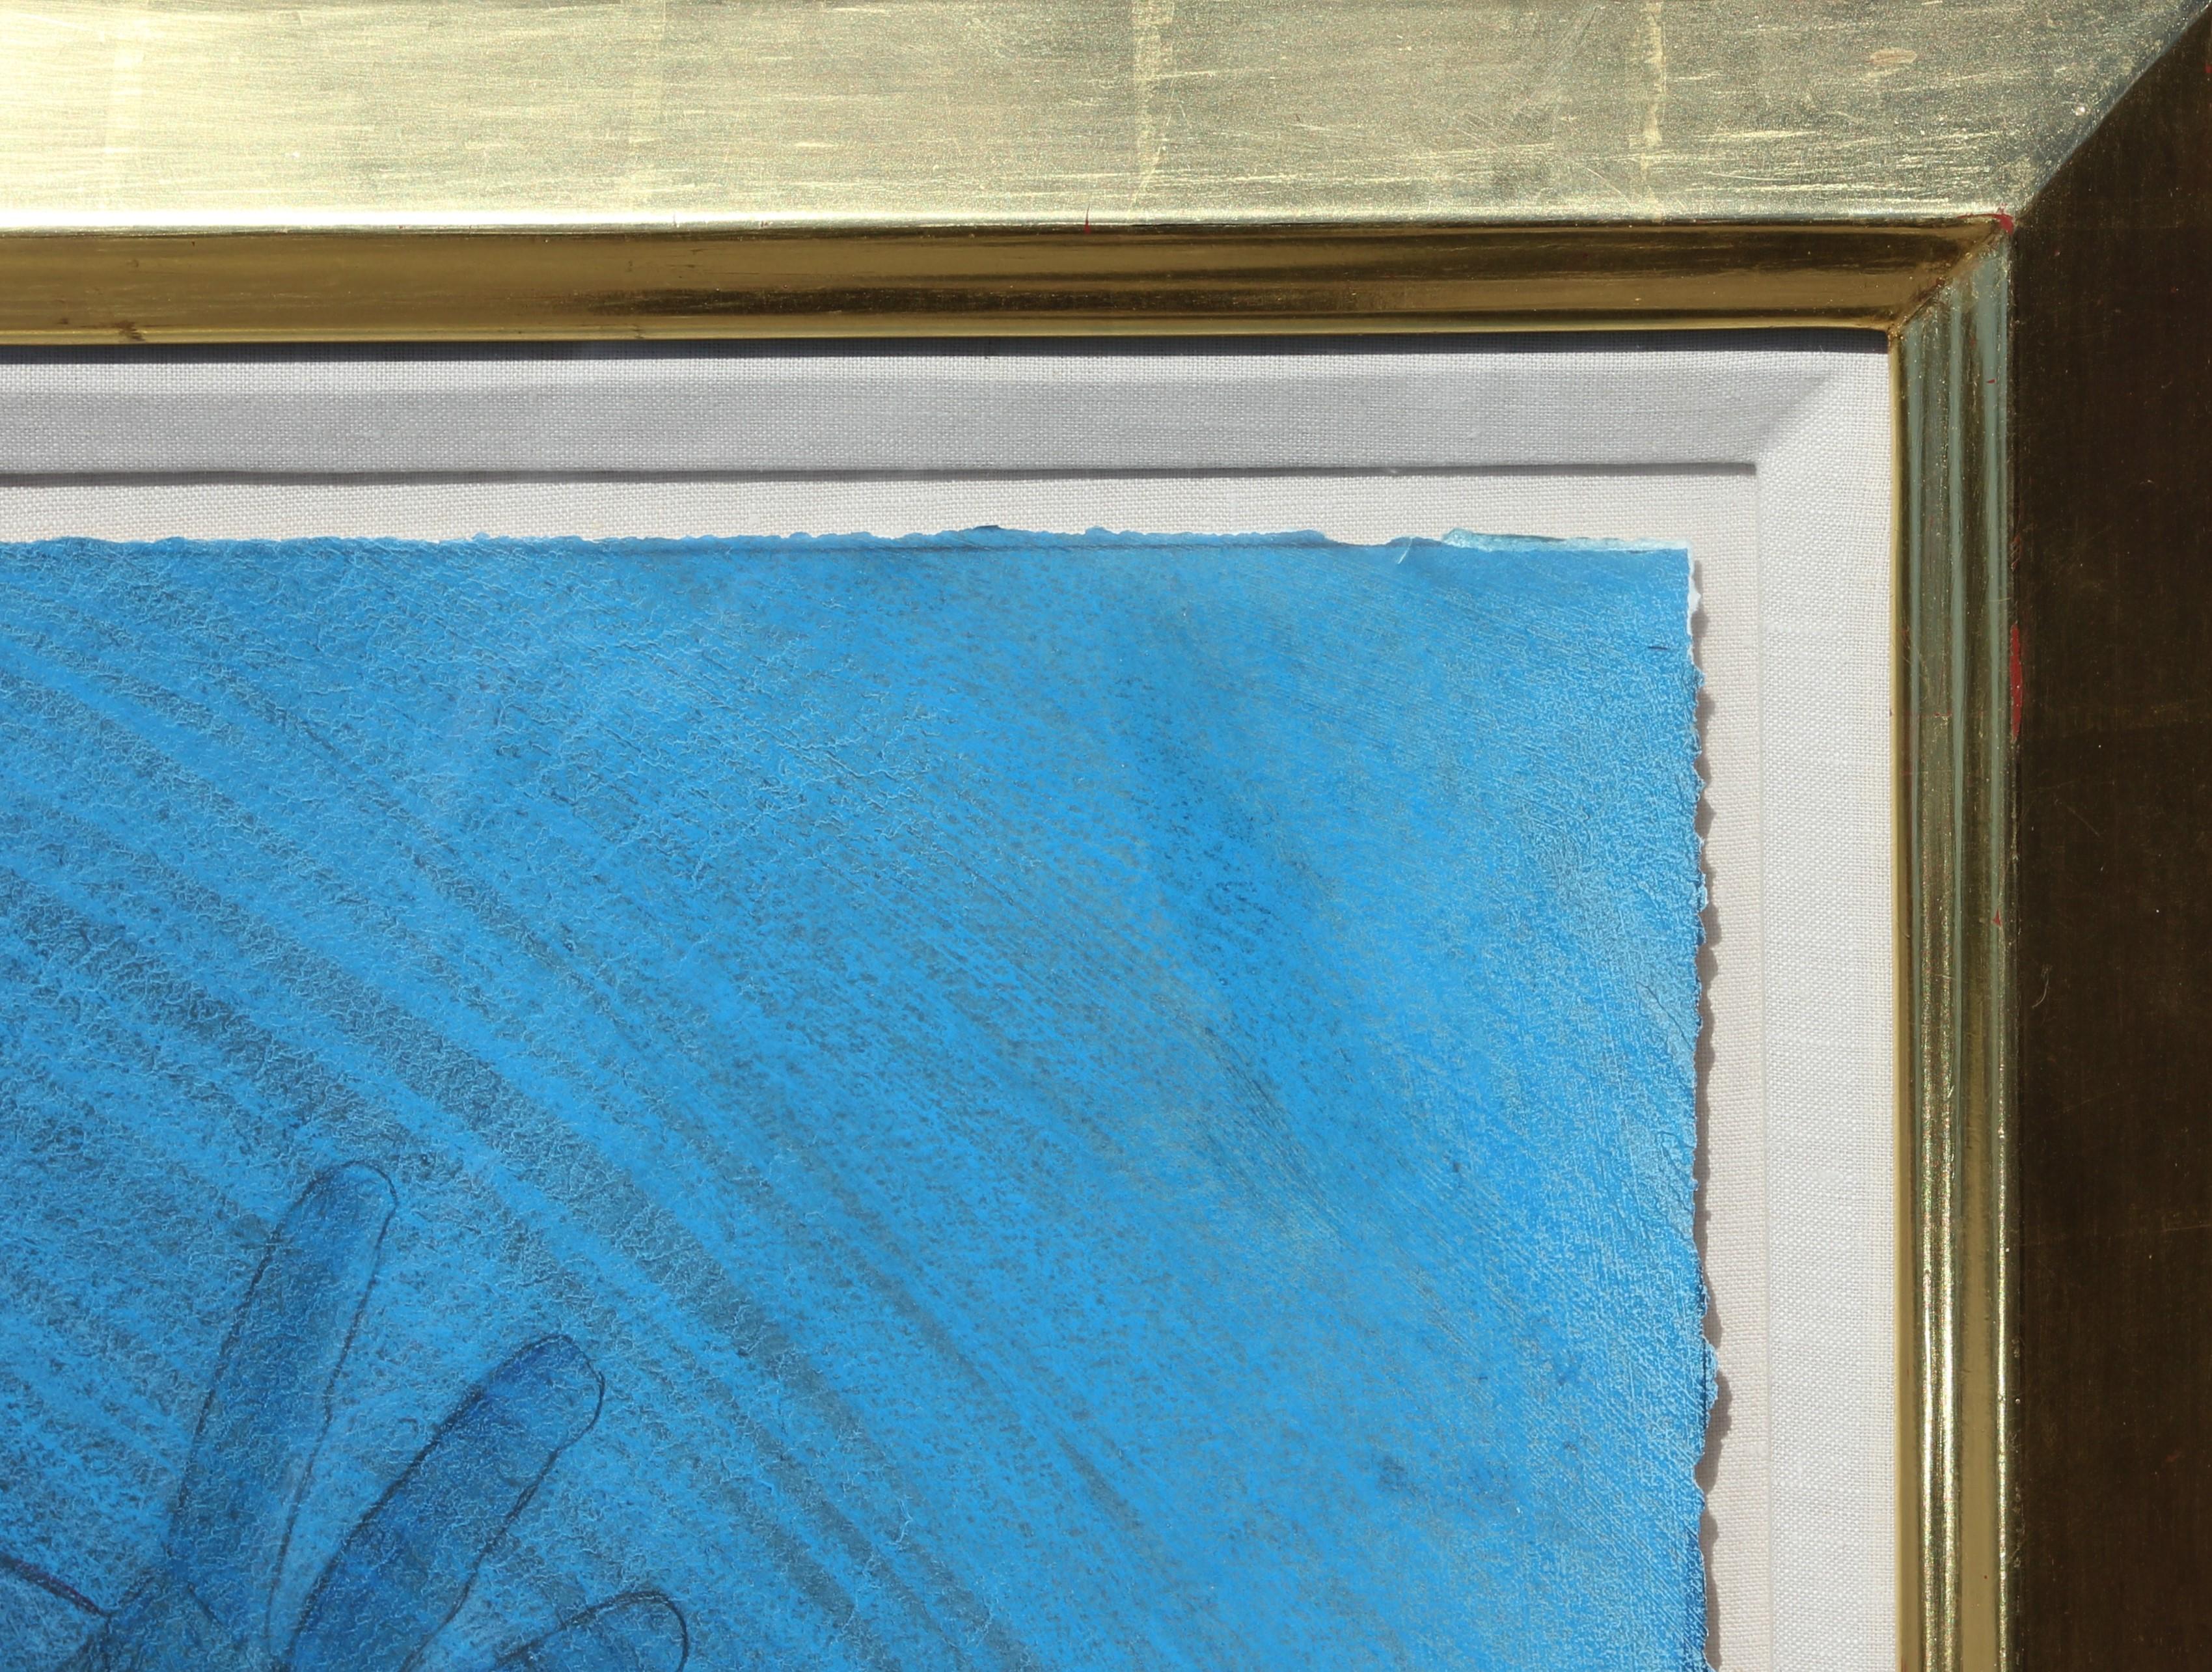 Peinture figurative féminine moderne abstraite en technique mixte - Bouton de chats bleu - Abstrait Painting par Peter Nickel